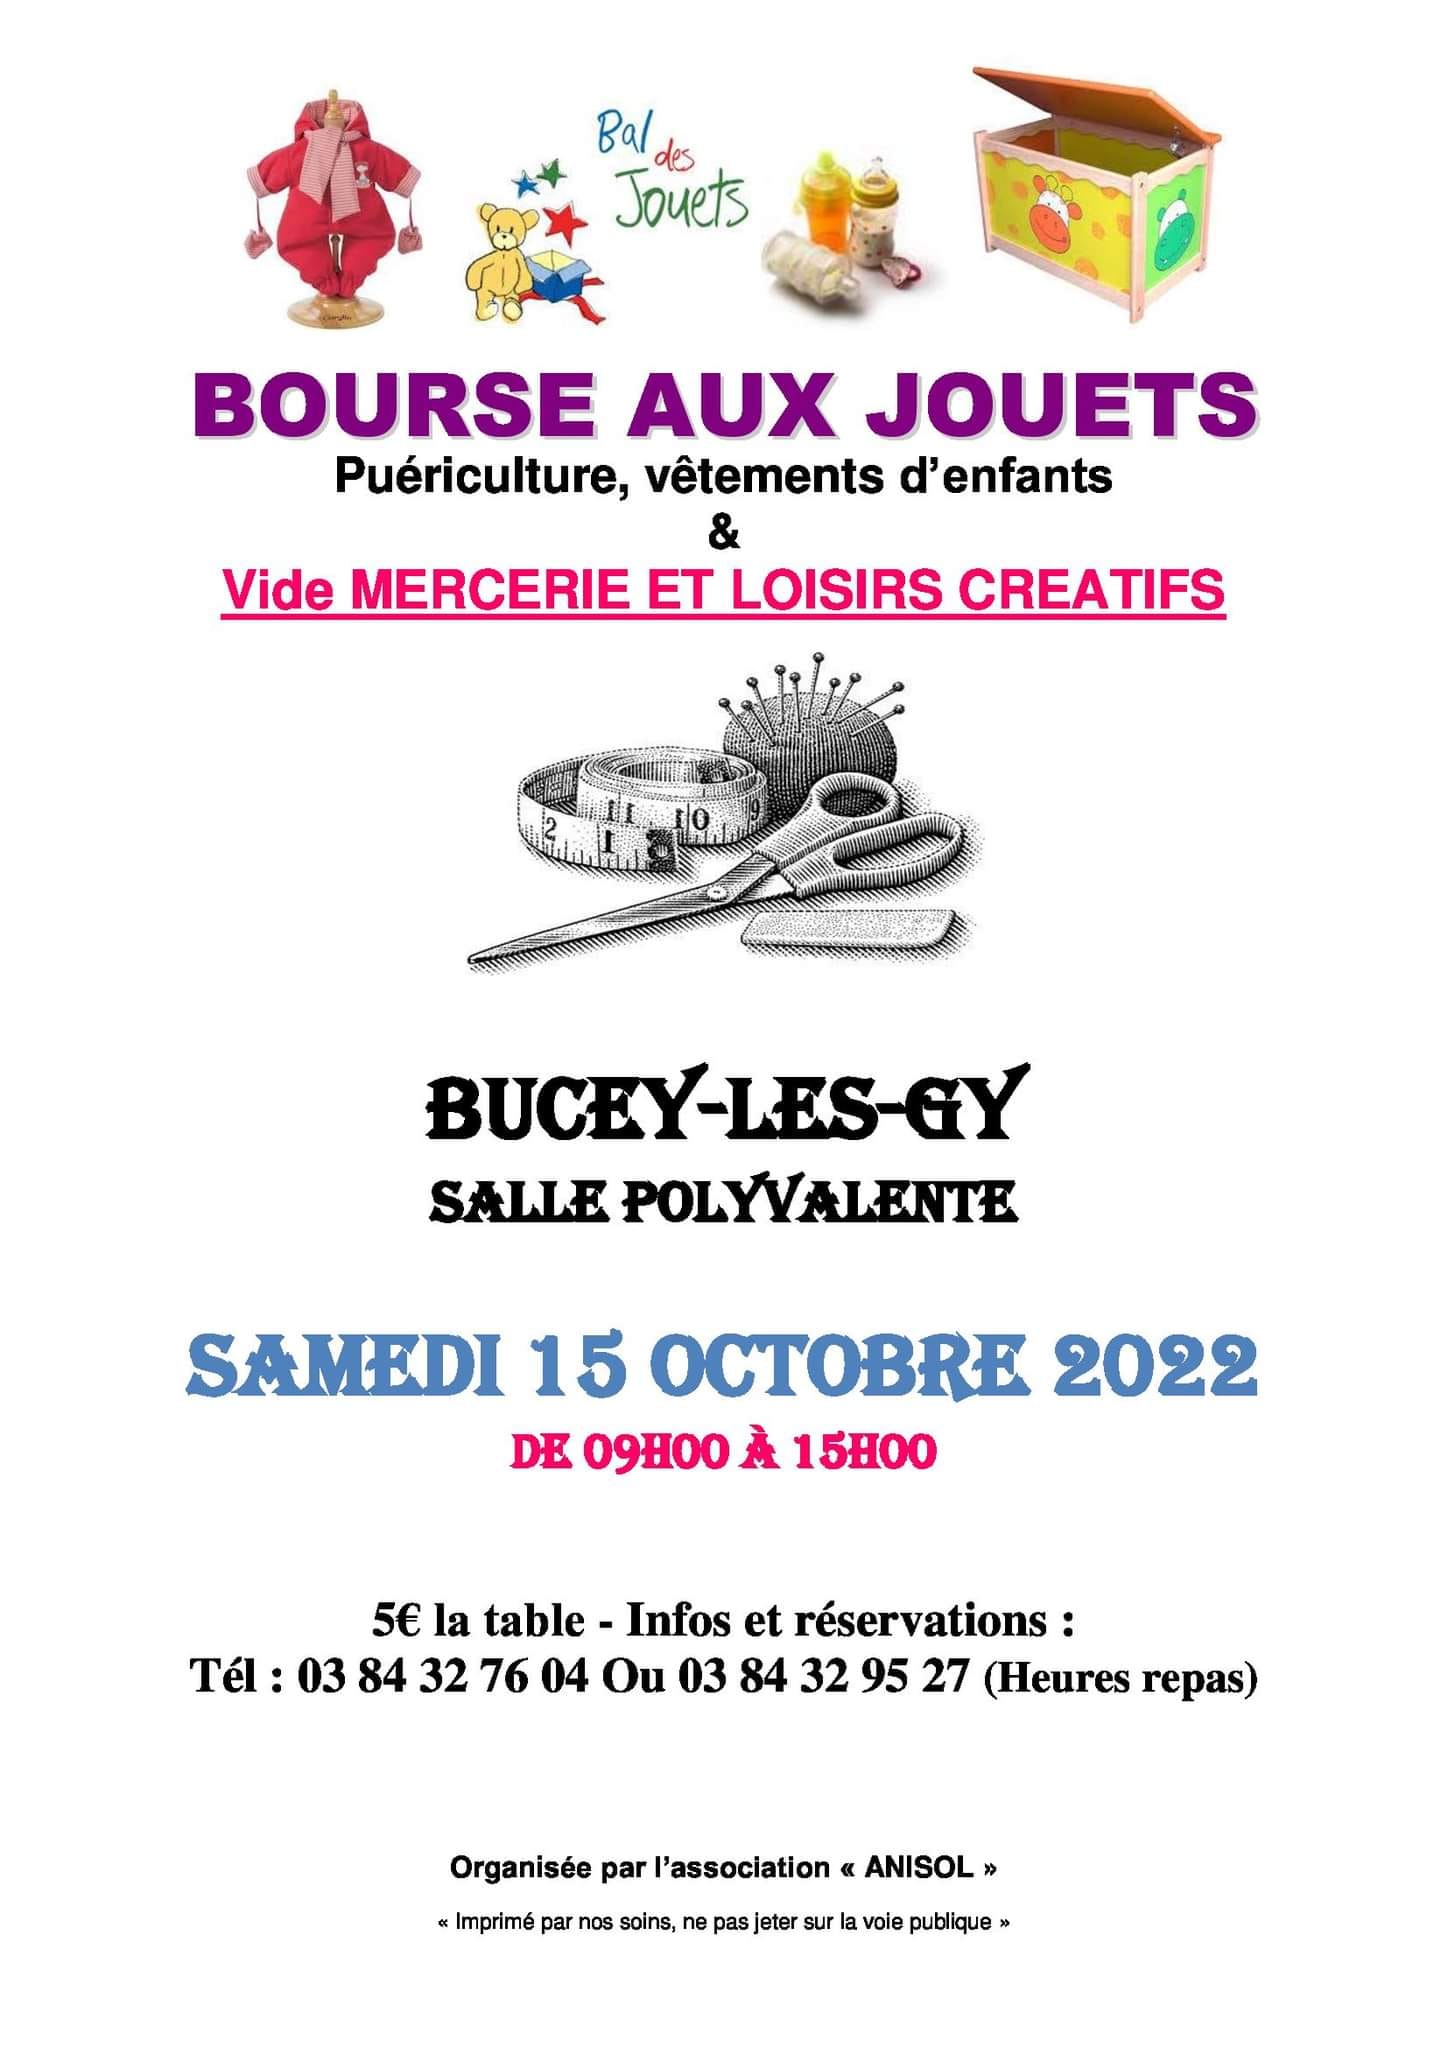 Bourse aux jouets, mercerie, loisirs créatifs ... à Bucey lès Gy 